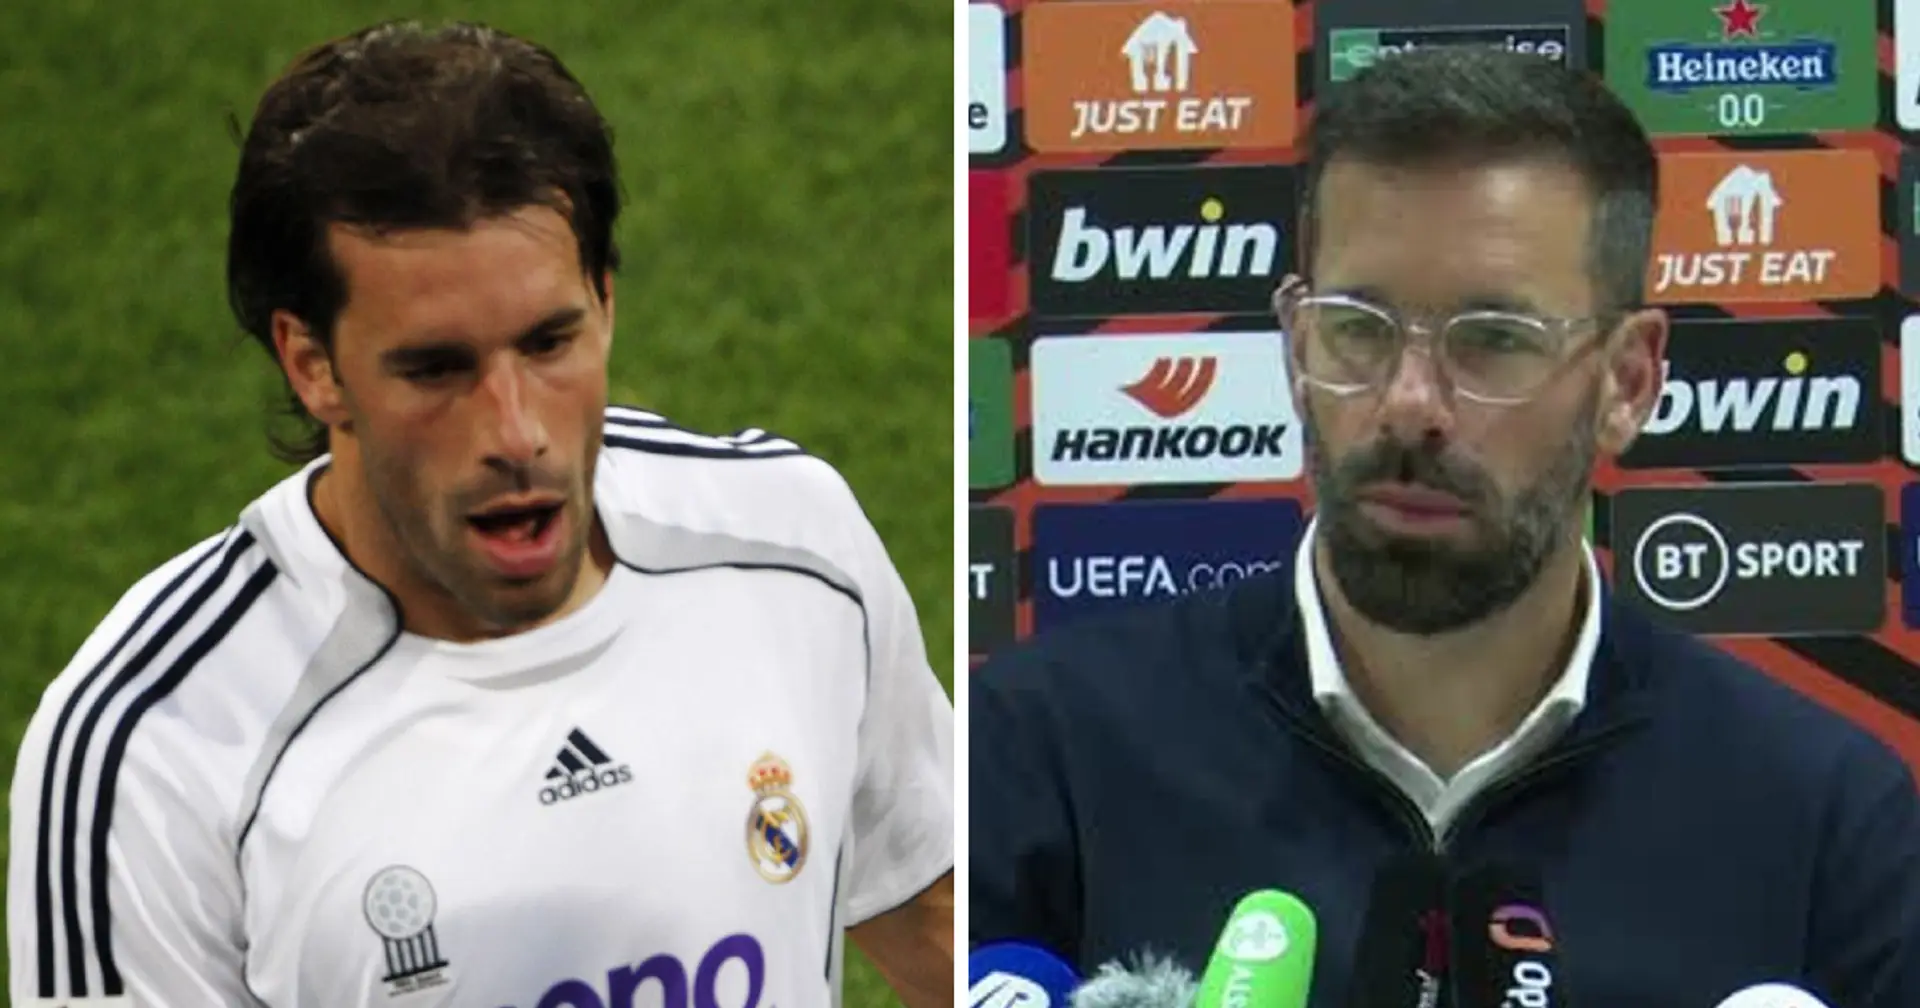 "Madrid zu verlassen war der größte Fehler": Van Nistelrooy ist traurig über den Abgang von Real Madrid – könnte aber bald zurückkehren